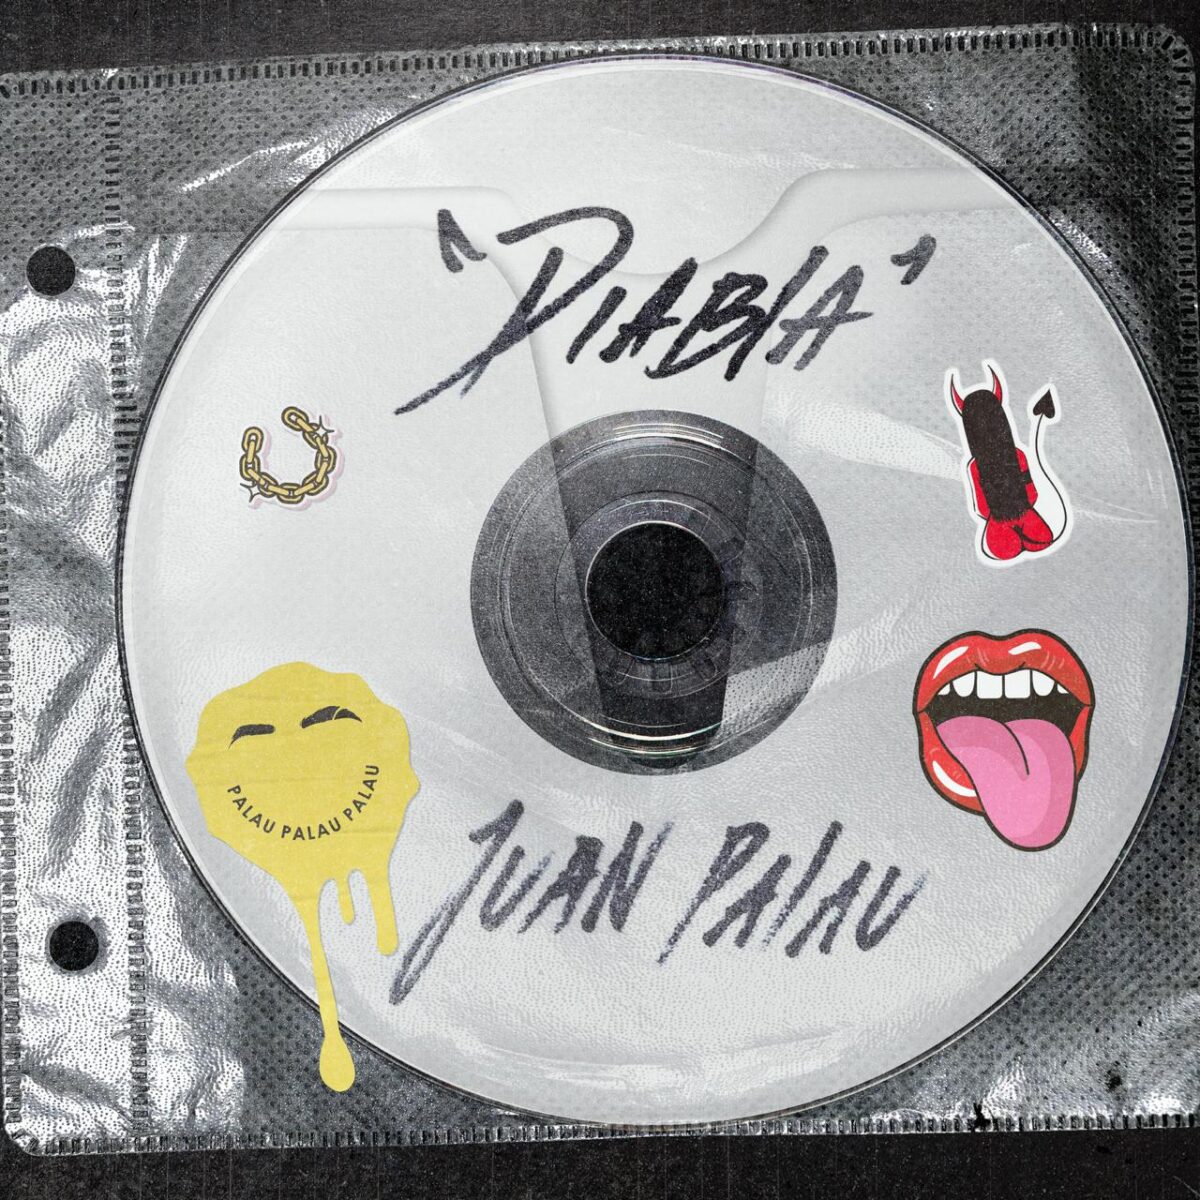 Juan Palau lanza 'Diabla', un reguetón de la 'vieja escuela' El artista colombiano Juan Palau continúa sorprendiendo a sus seguidores con nueva música, y esta vez lo hace con su más reciente lanzamiento titulado 'Diabla'.